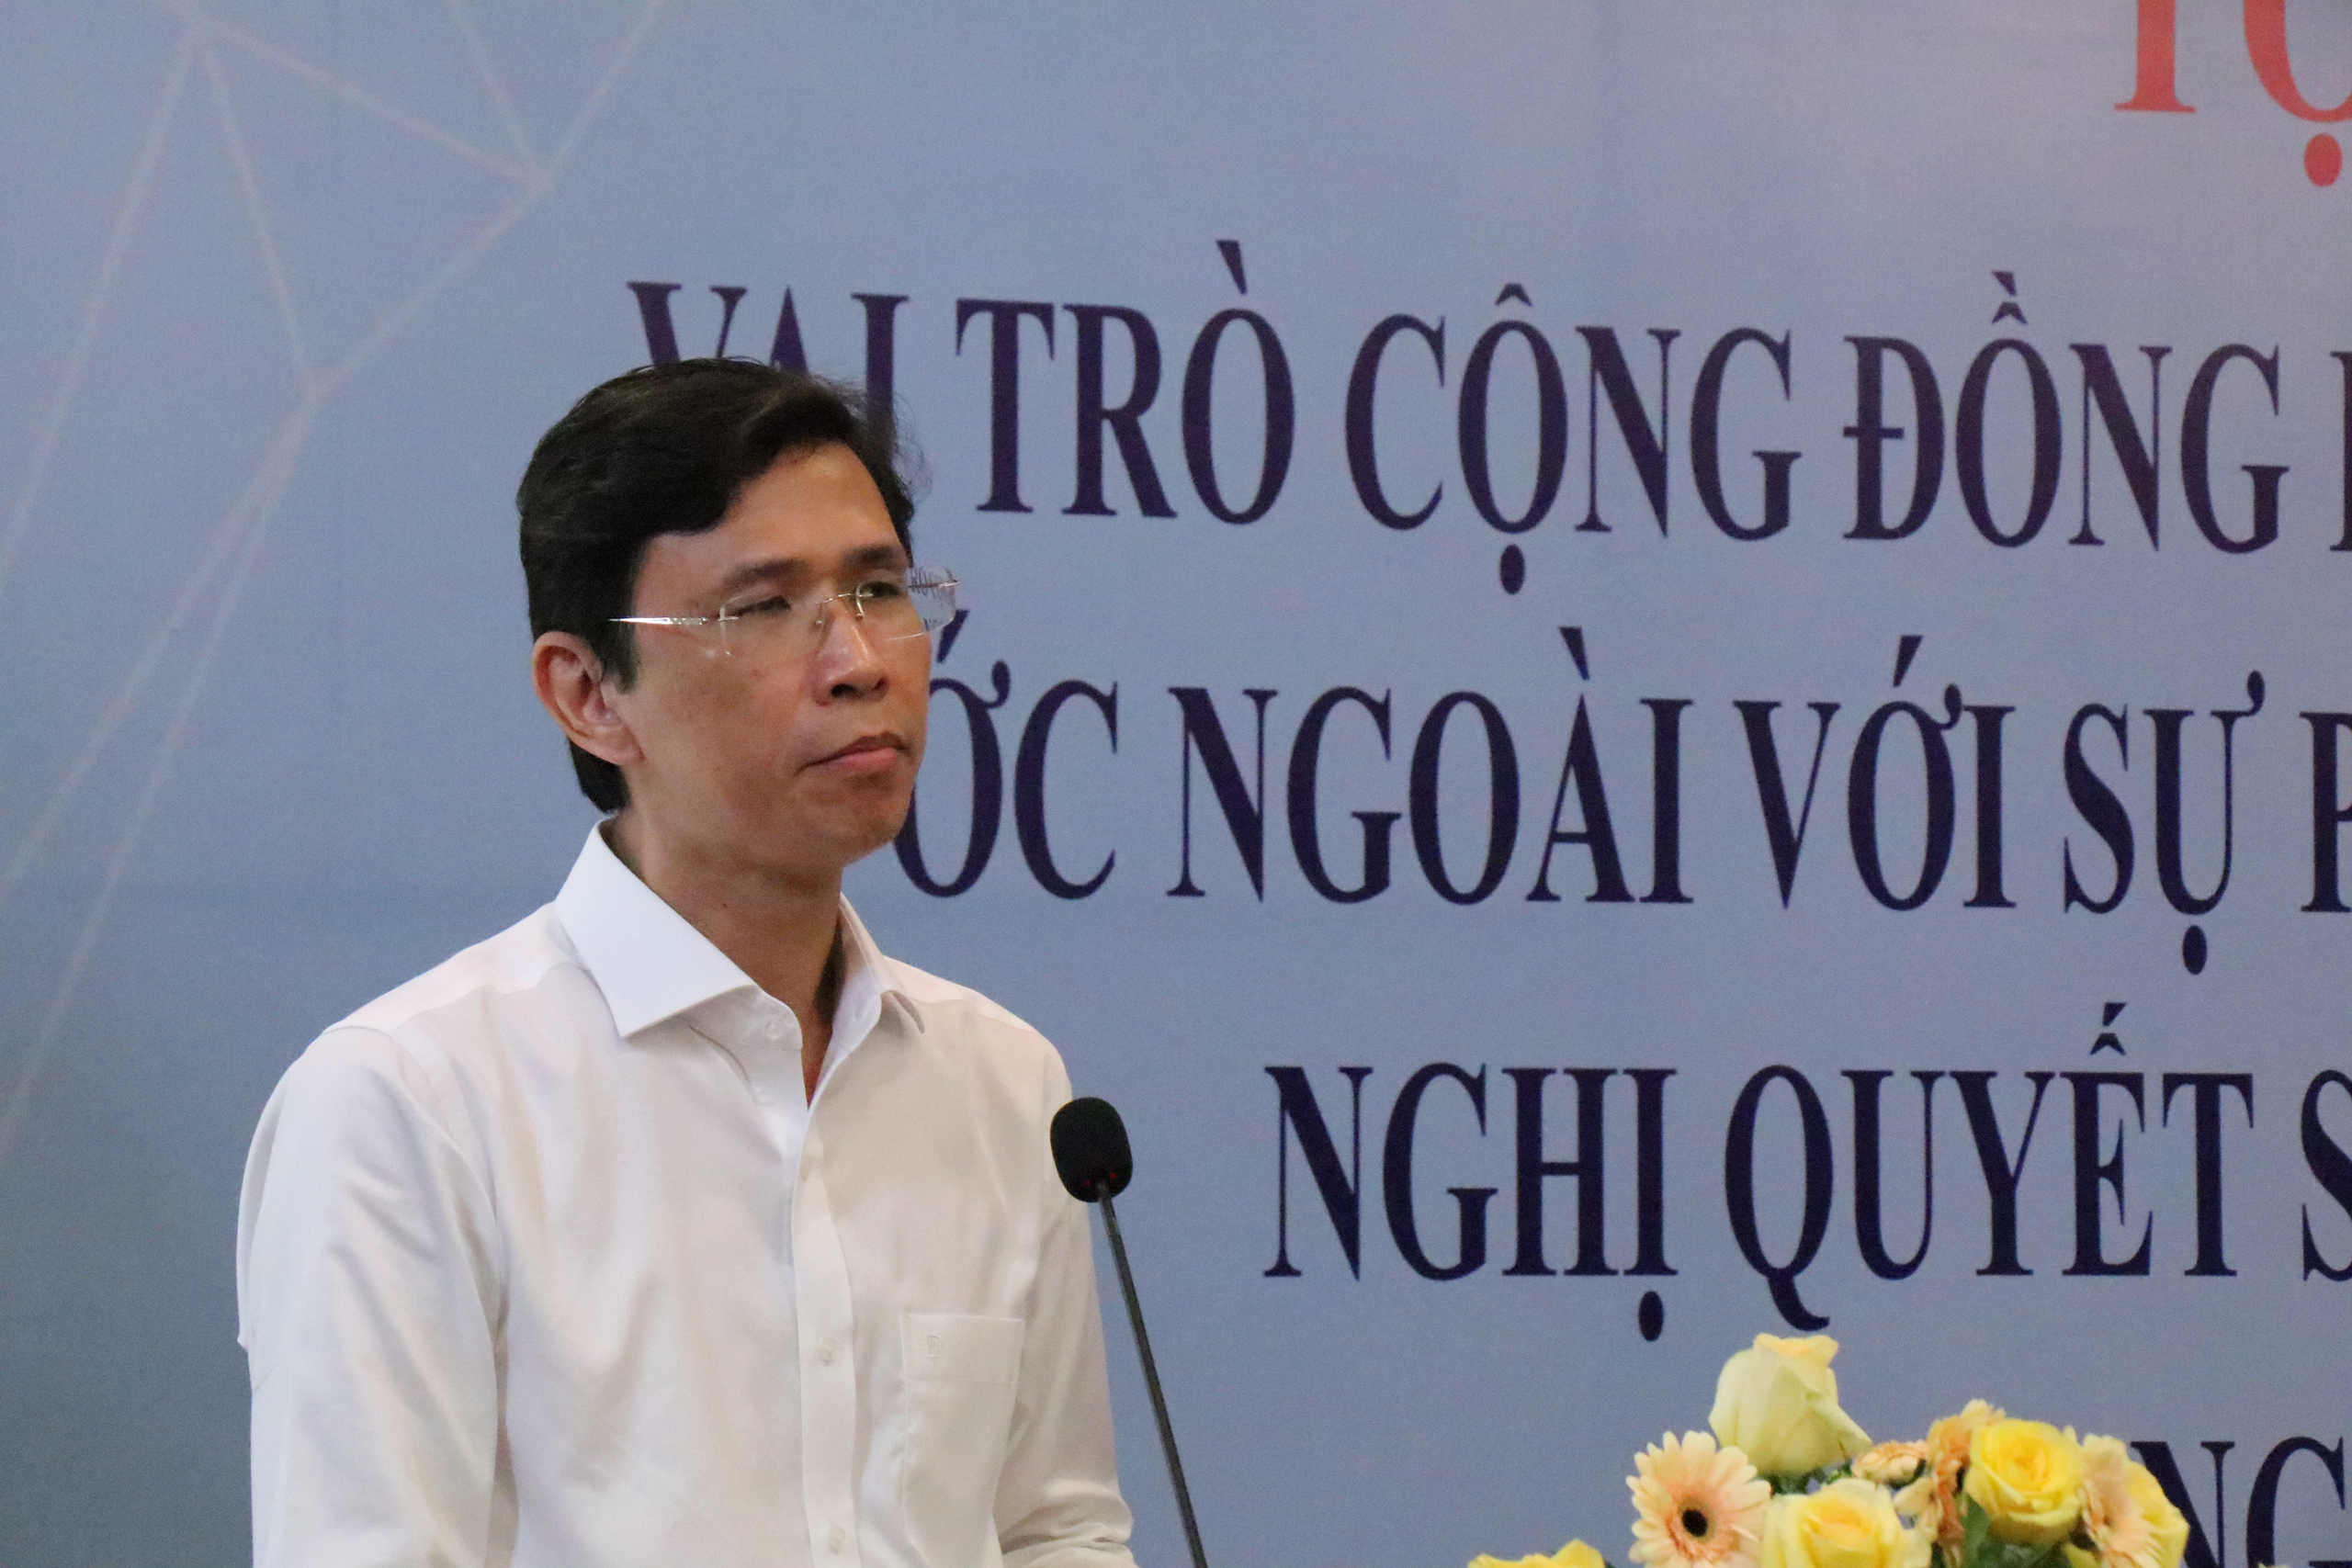 Ông Nguyễn Anh Thi, Trưởng ban quản lý Khu công nghệ cao TP.HCM nhận định, doanh nhân, trí thức người Việt ở nước ngoài phải là chủ thể đề xuất các chương trình, đề án lớn về phát triển đất nước